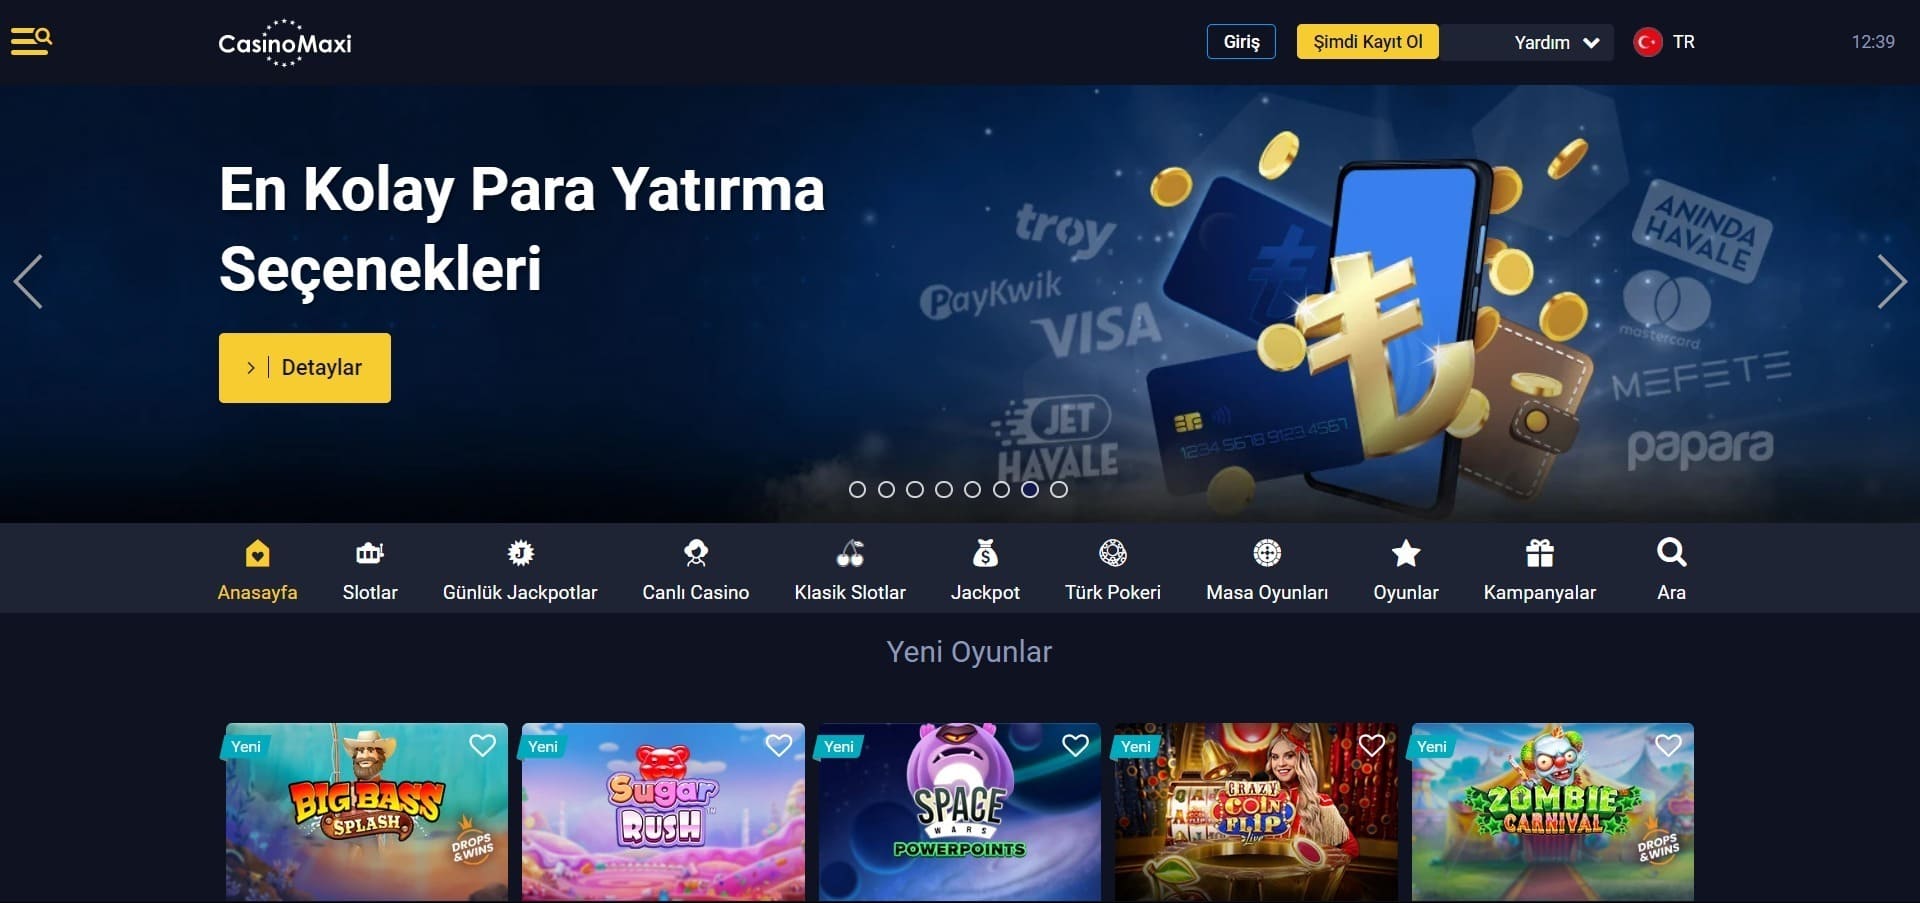 CasinoMaxi'nun resmi web sitesi